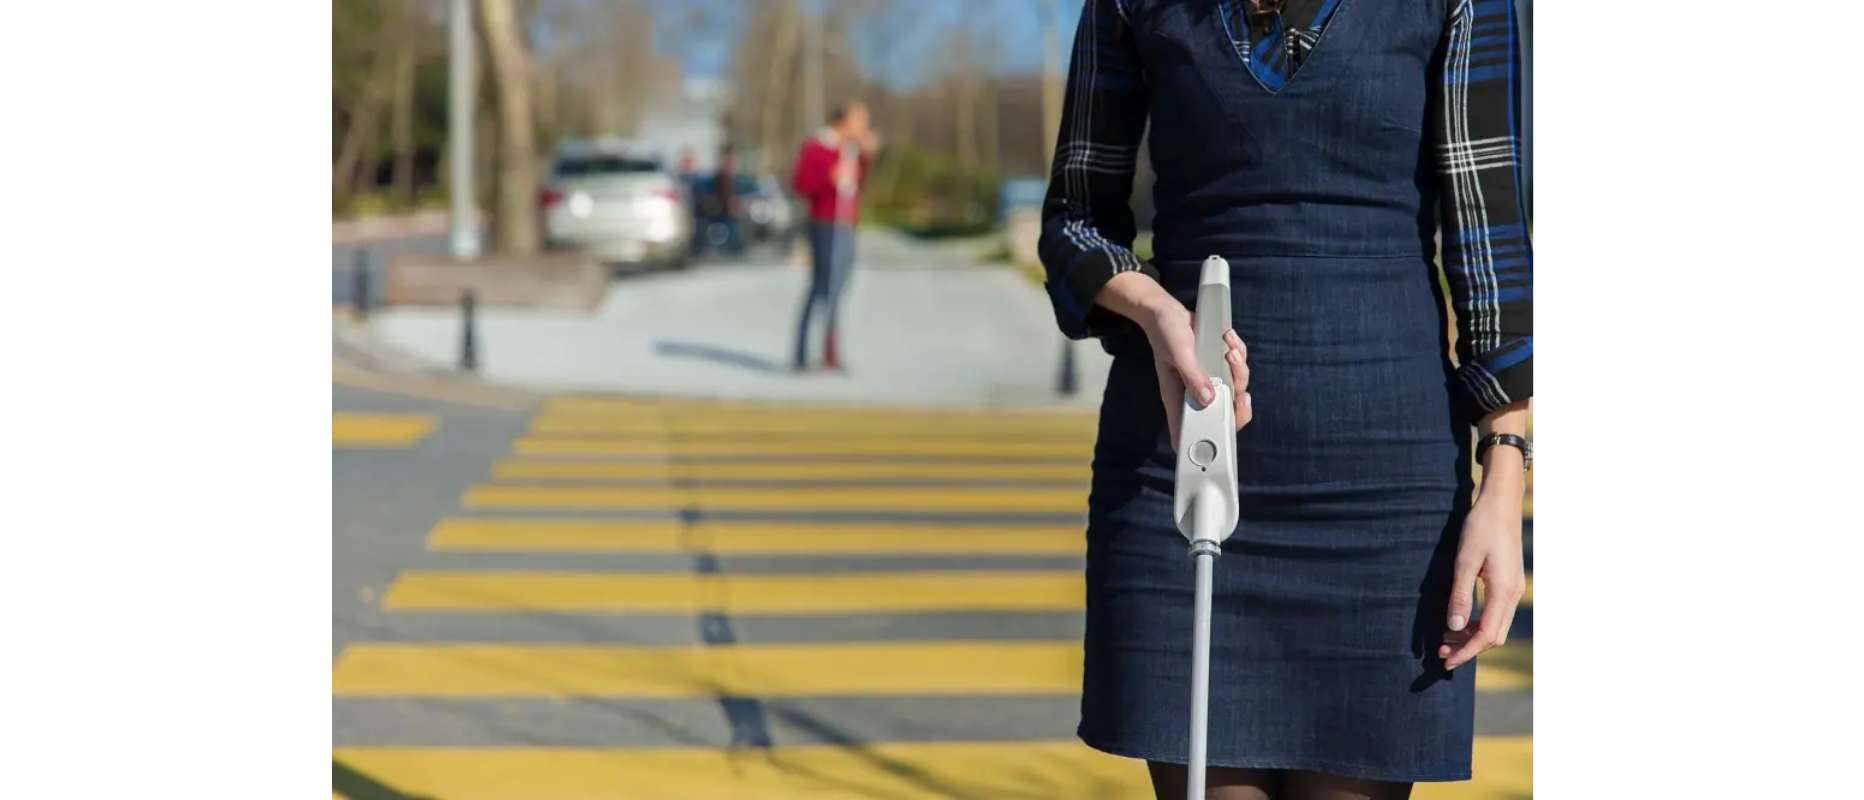 障害物を認識しながら歩行ルートをガイドしてくれるスマート白杖サービス